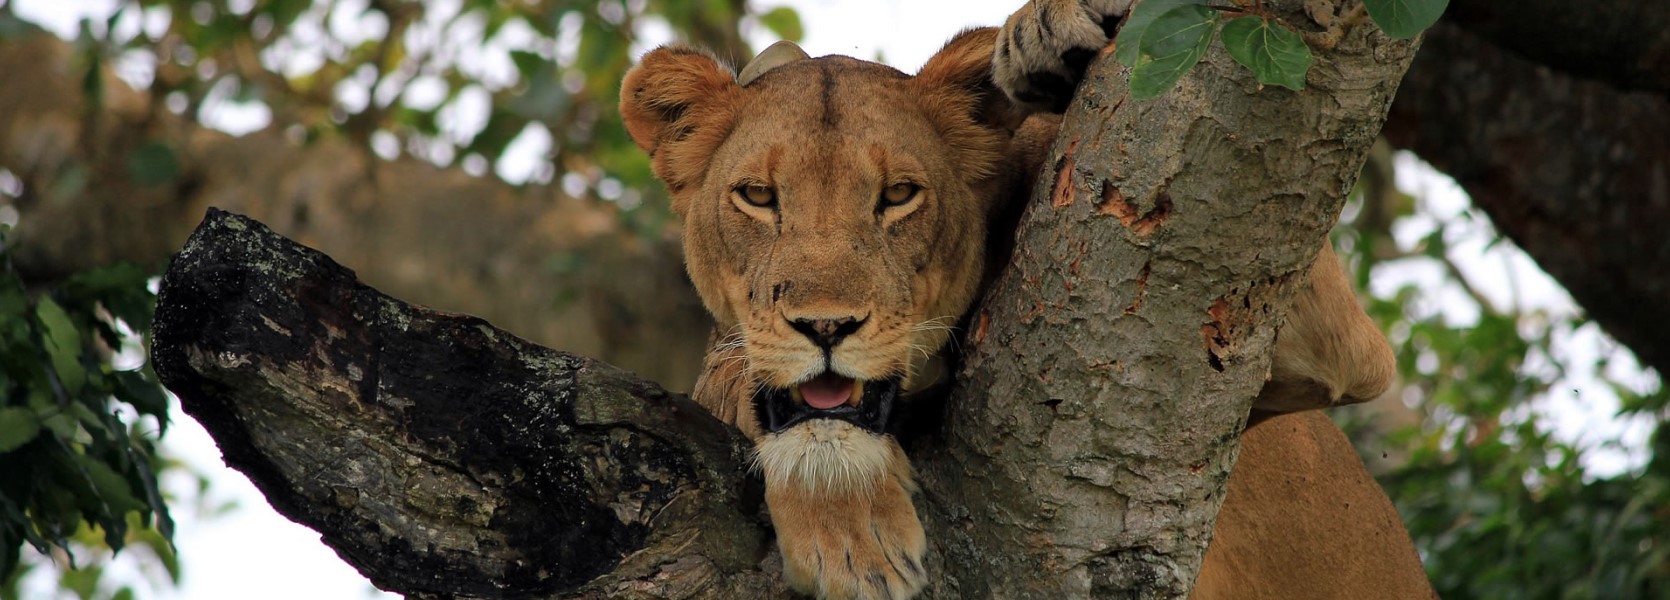 5 Days Of Uganda's Wildlife Safari